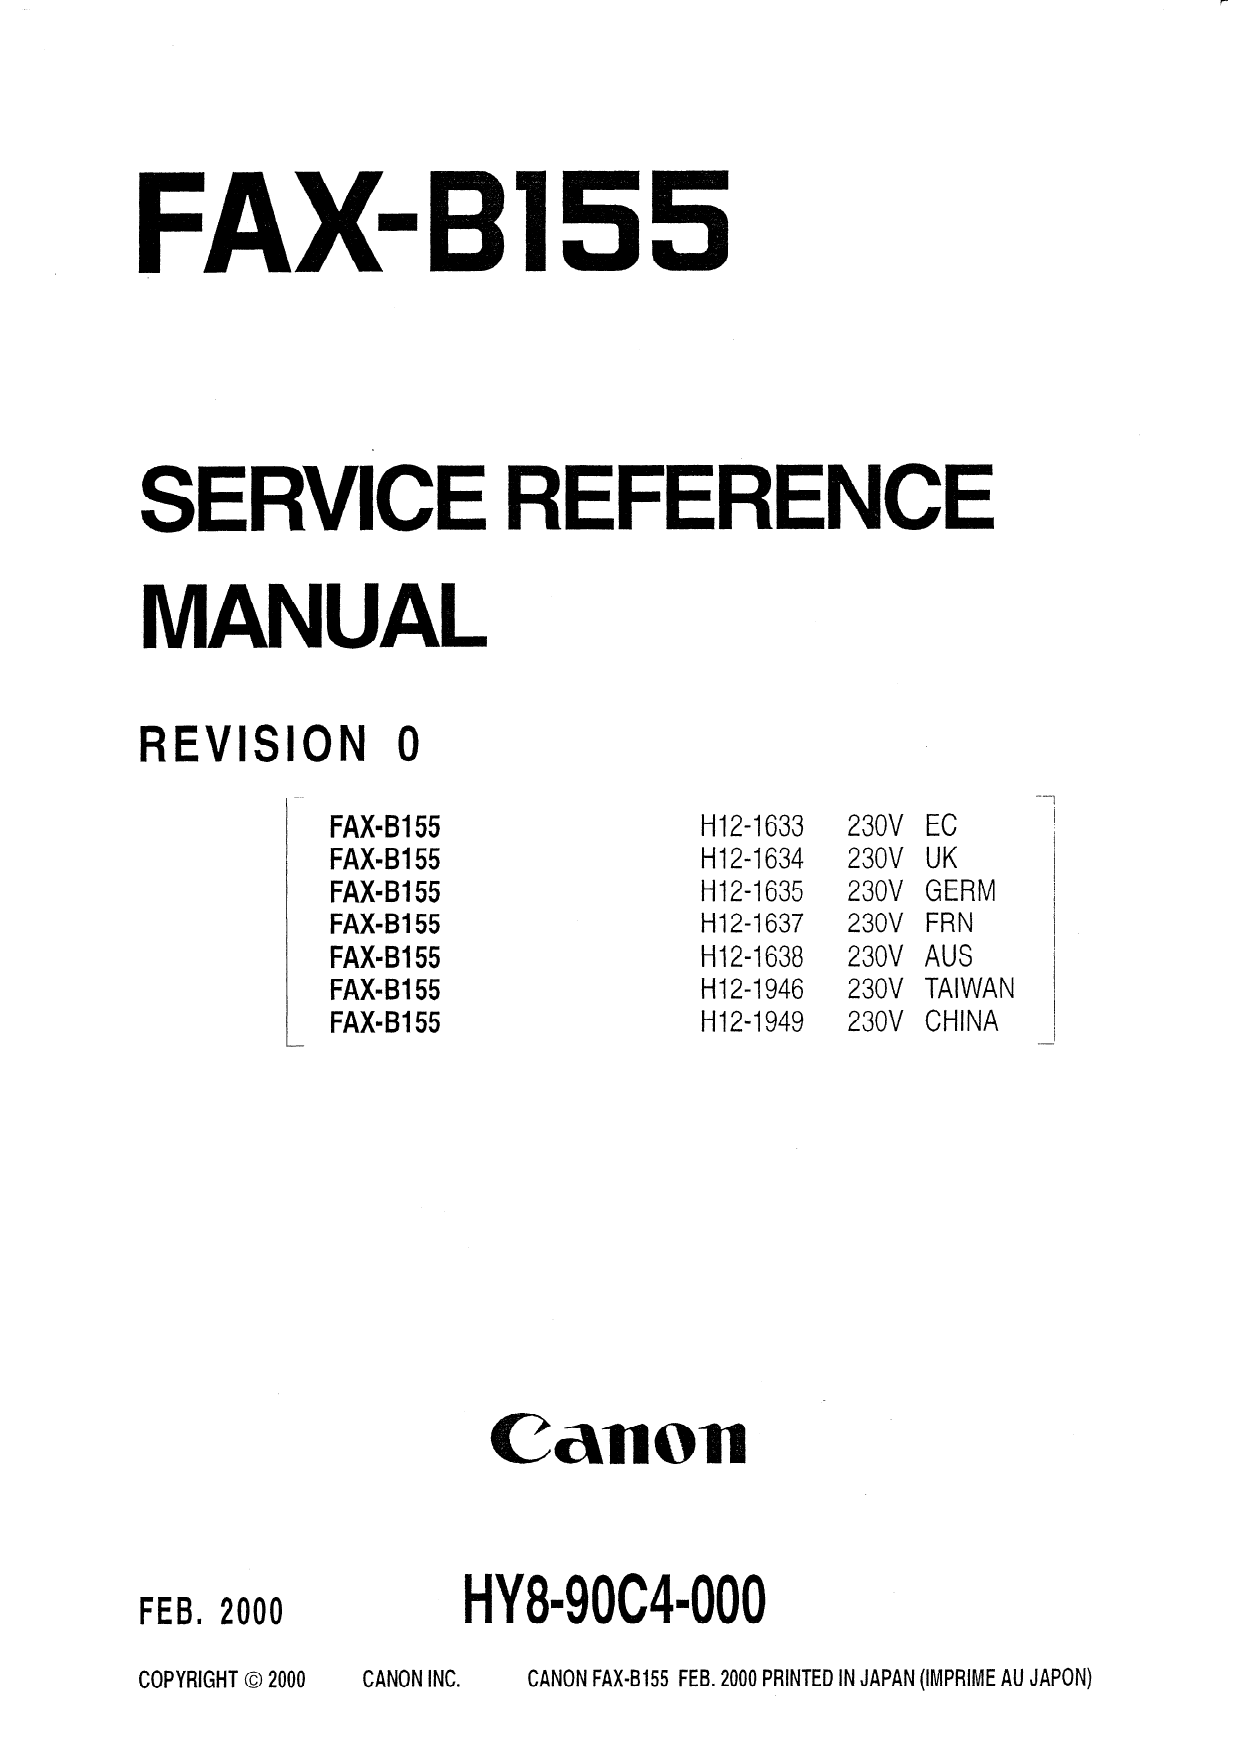 Canon FAX B155 Service Manual-1